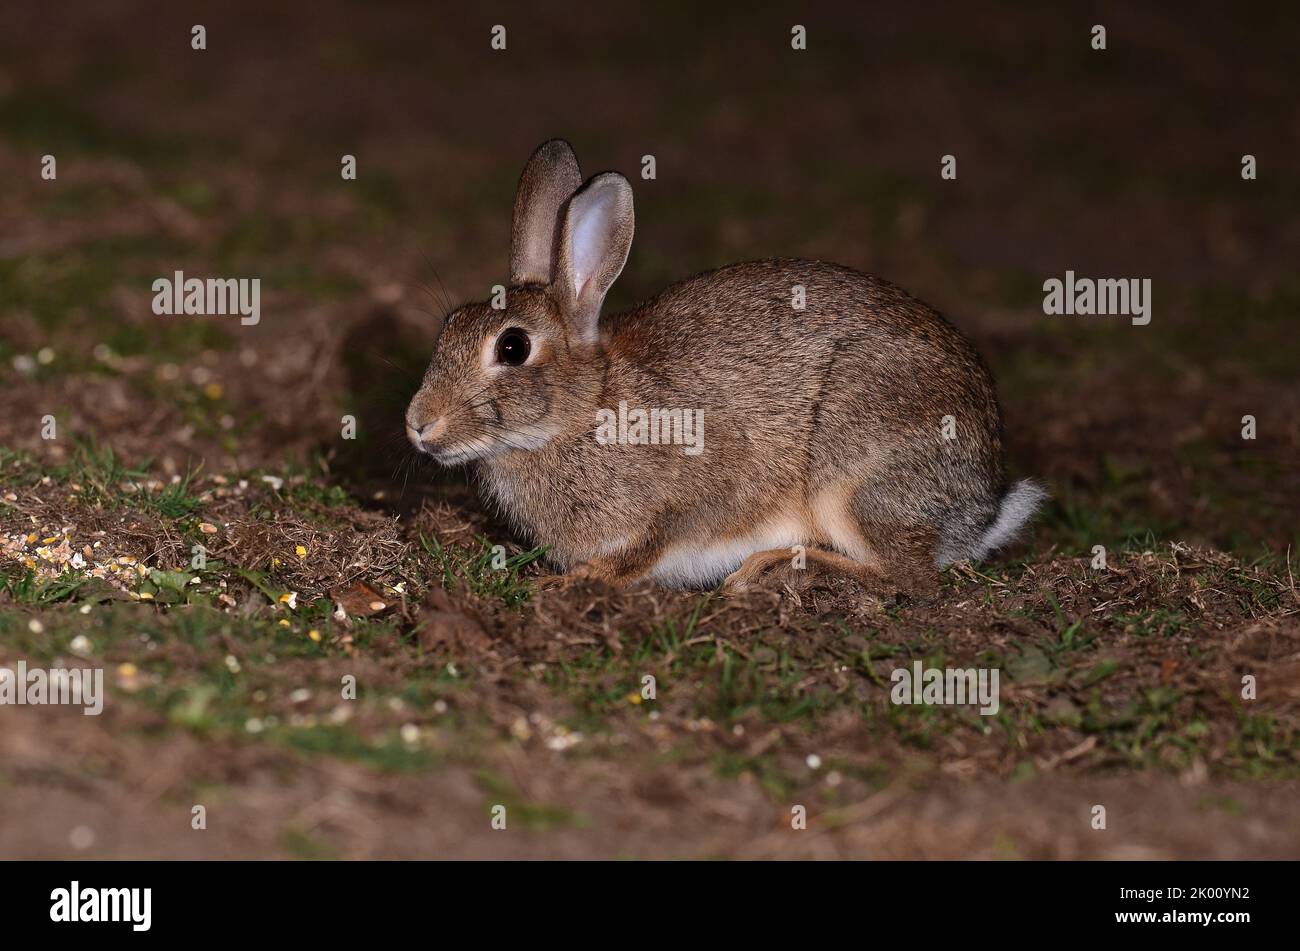 adulto conejo alimentando en cebo de maíz en el campo en la noche Foto de stock